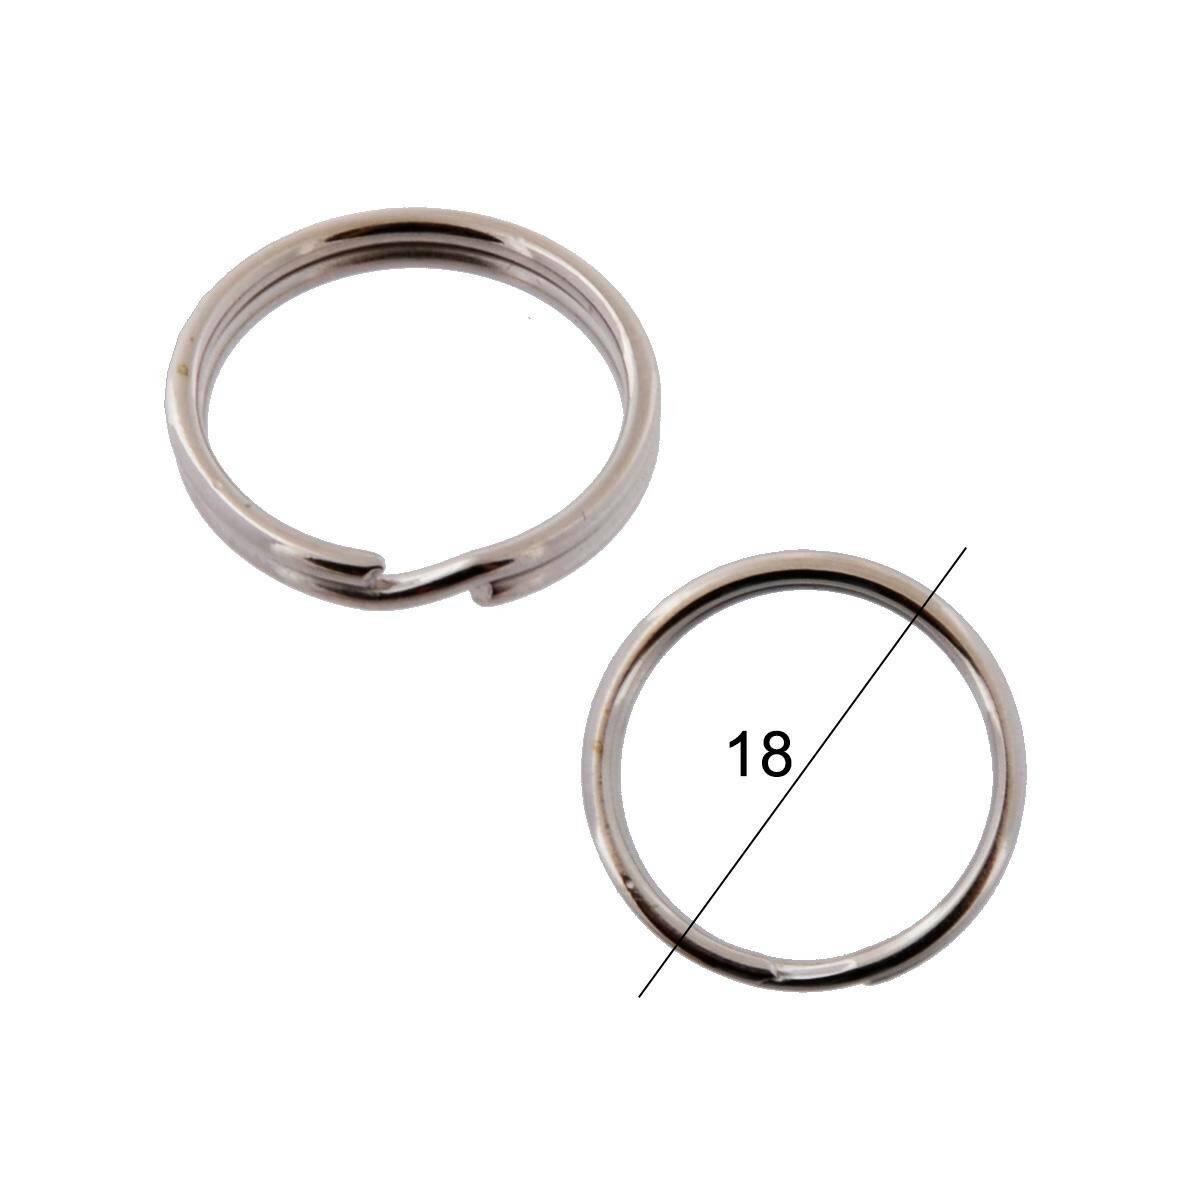 Key rings diameter 18mm